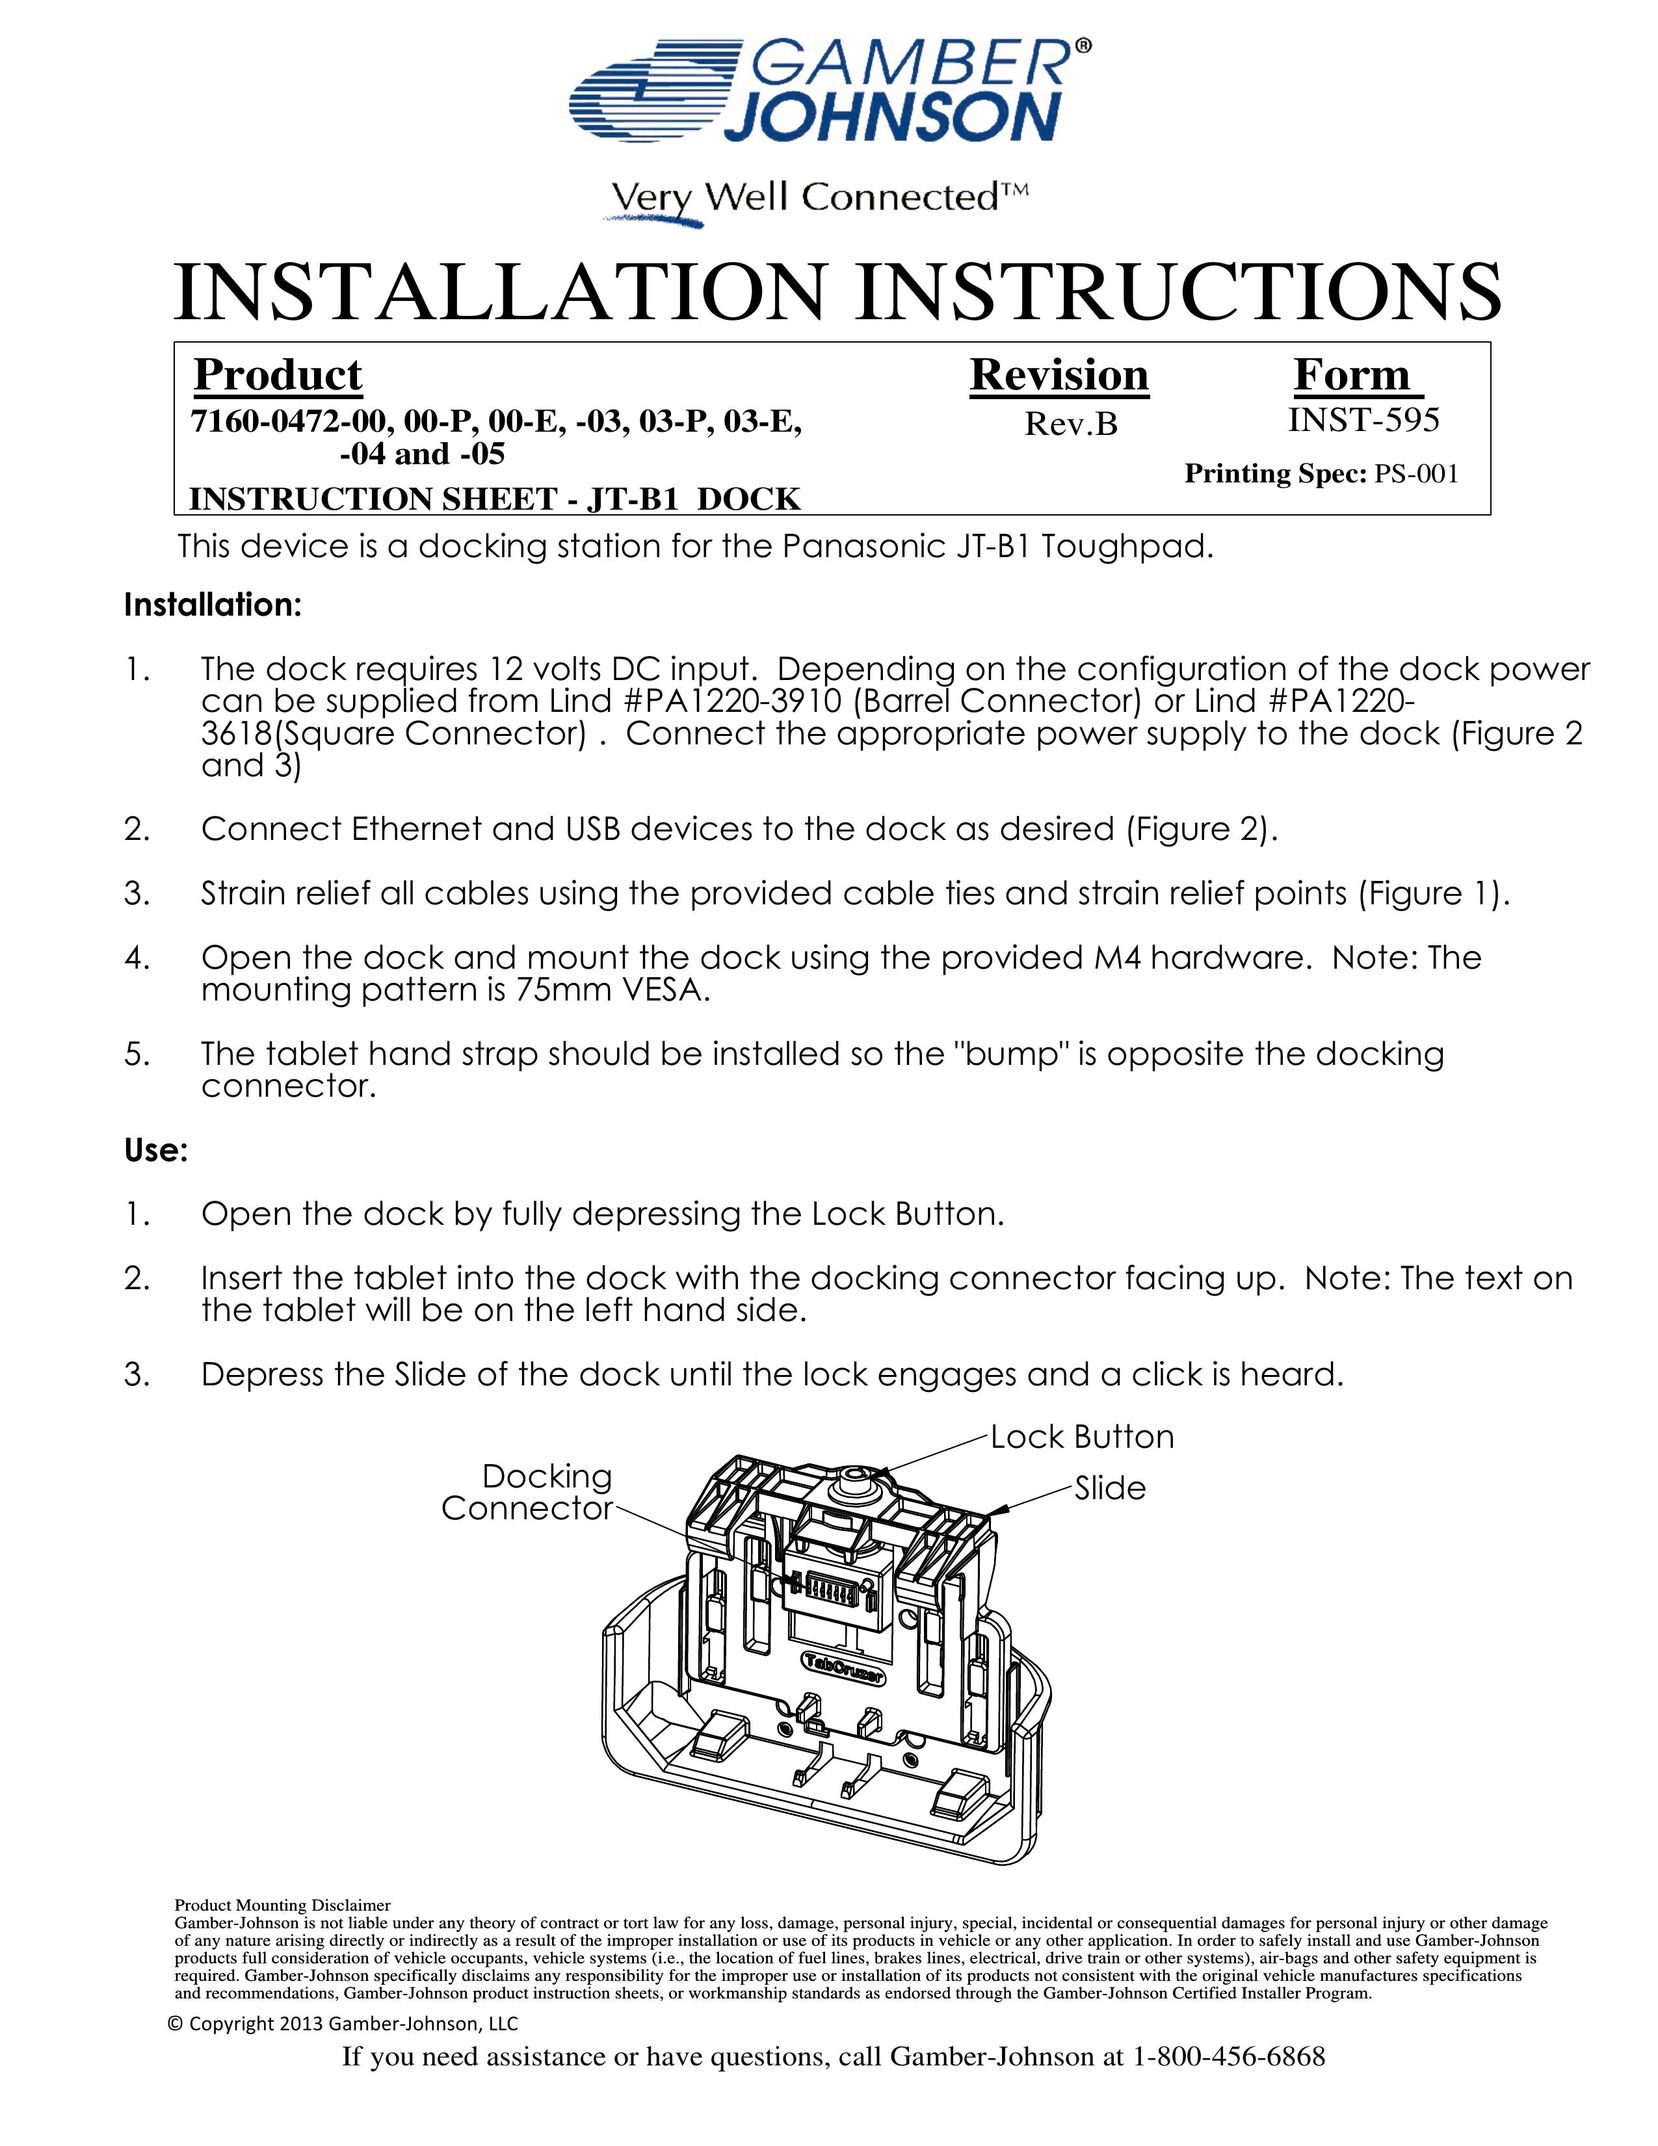 Gamber Johnson 7130-0472-03-P Laptop Docking Station User Manual